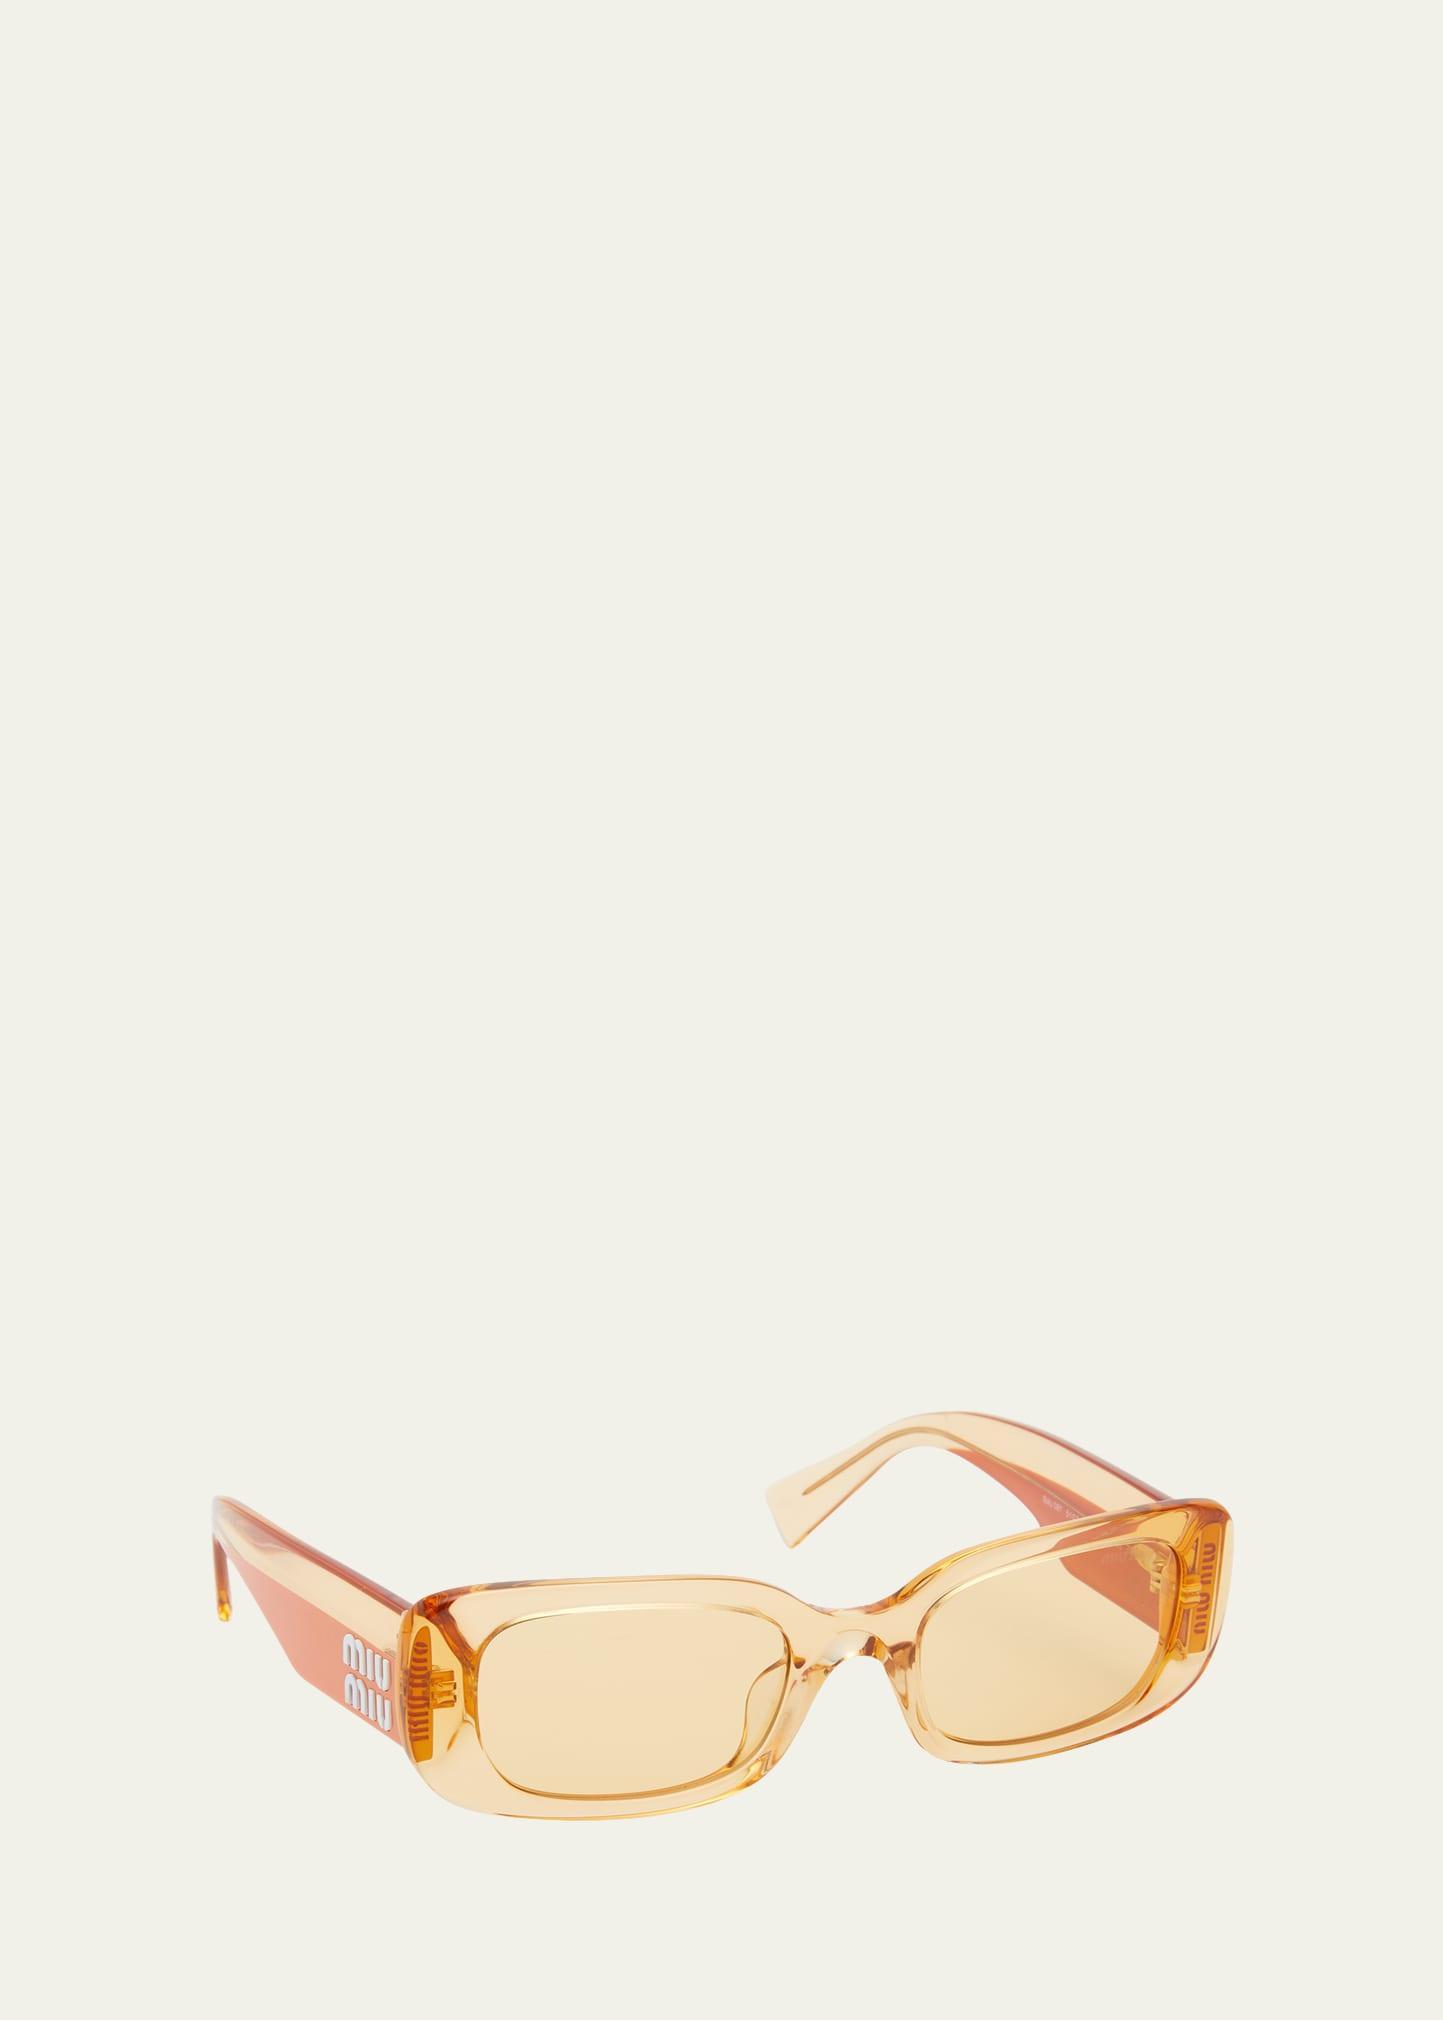 Miu Miu 51mm Rectangular Sunglasses Product Image